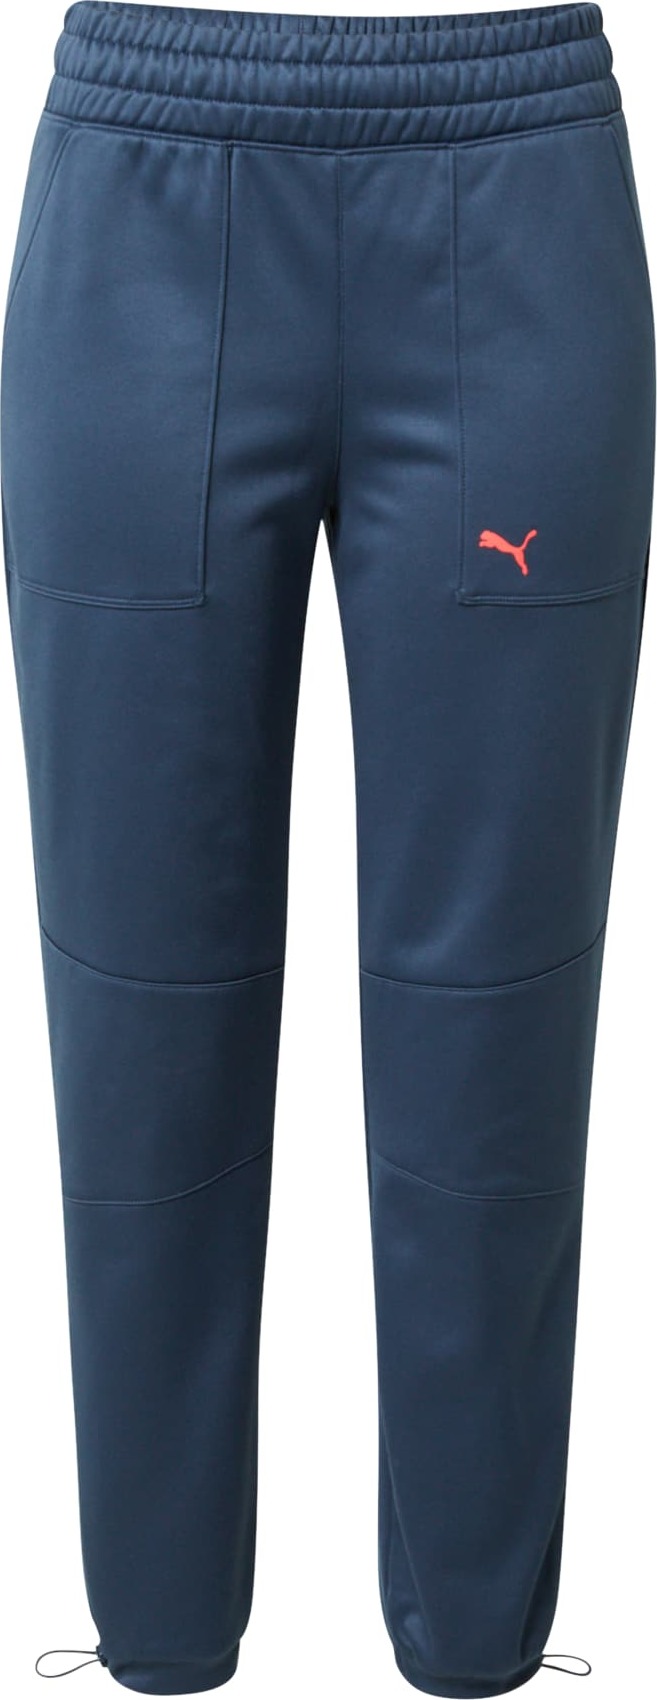 PUMA Sportovní kalhoty marine modrá / korálová